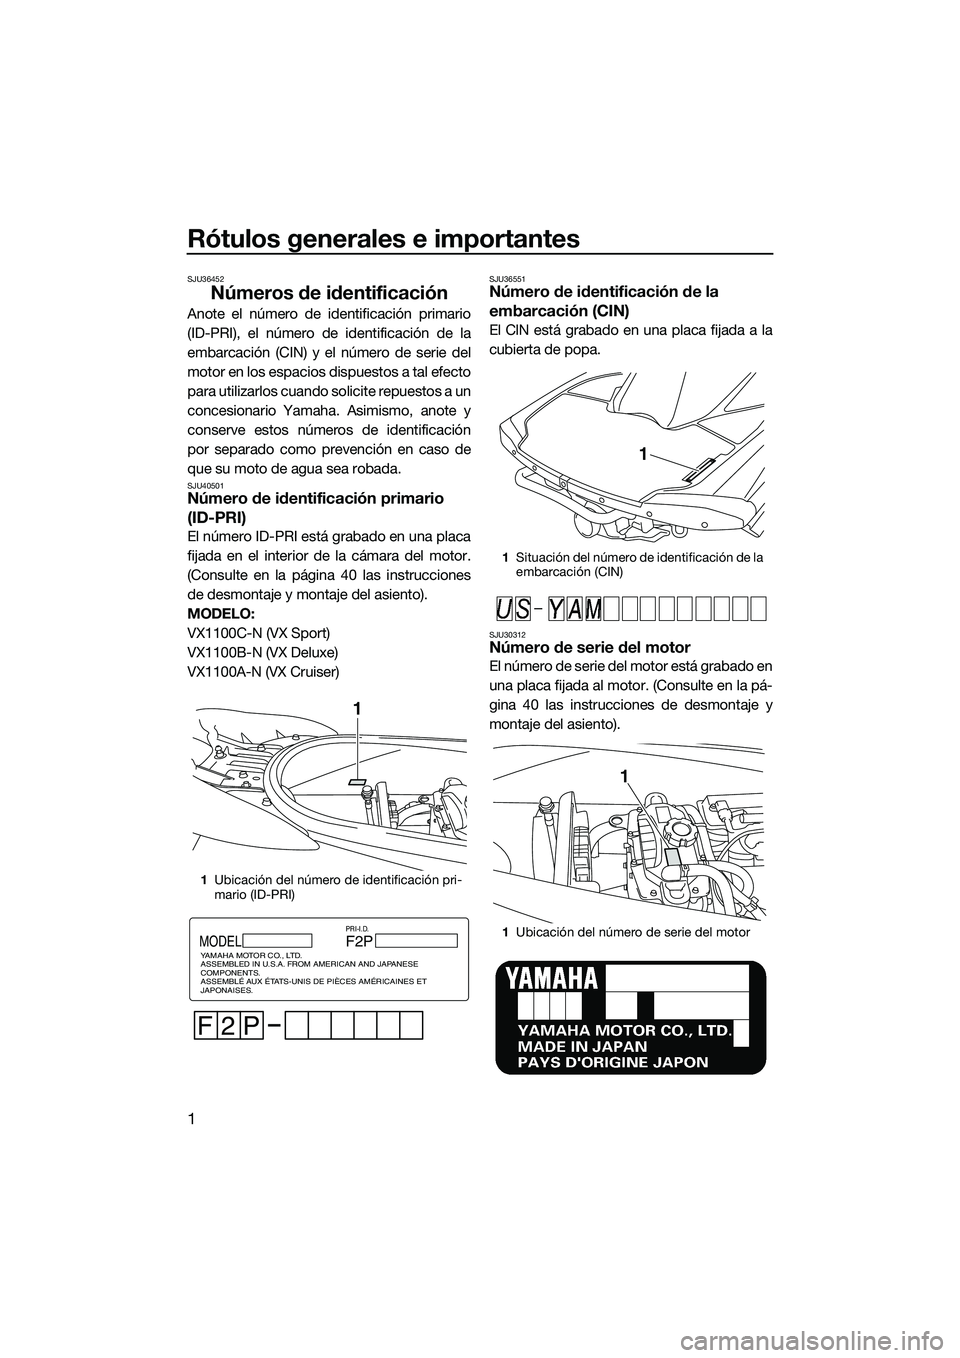 YAMAHA VX SPORT 2014  Manuale de Empleo (in Spanish) Rótulos generales e importantes
1
SJU36452
Números de identificación
Anote el número de identificación primario
(ID-PRI), el número de identificación de la
embarcación (CIN) y el número de se